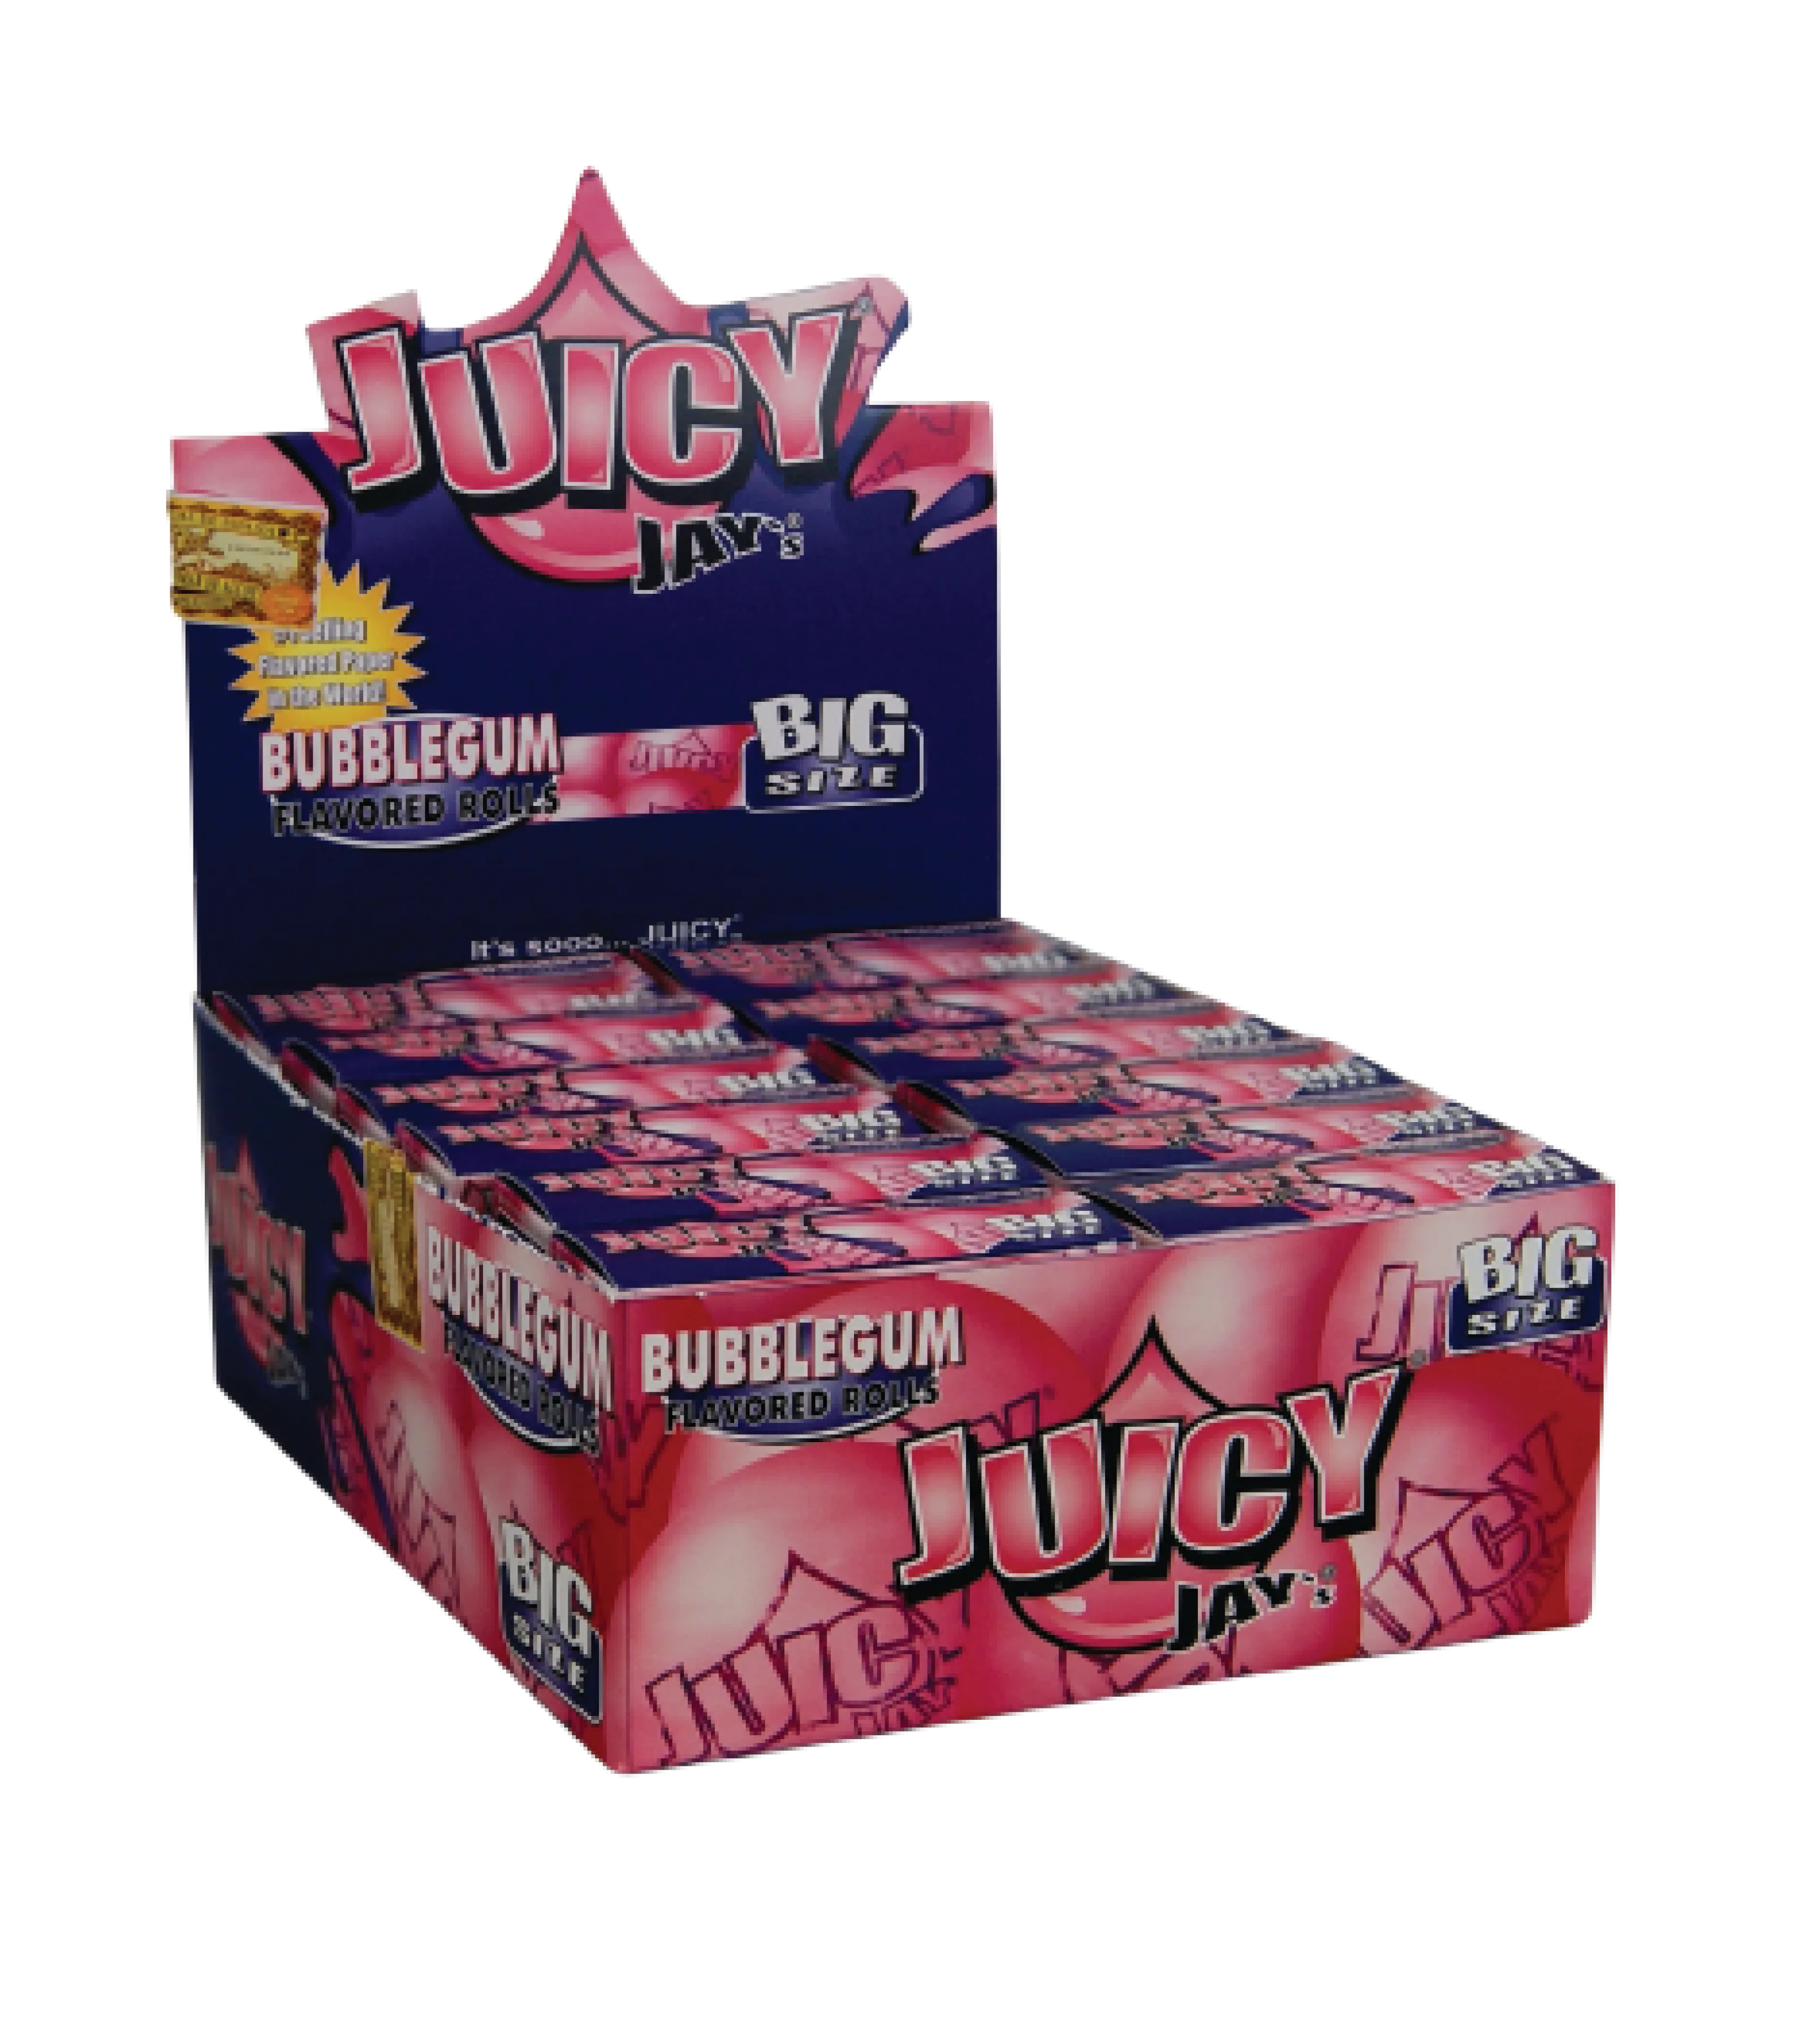 achat cbd juicy jay’s papier à rouler en rolls au chanvre goût bubblegum